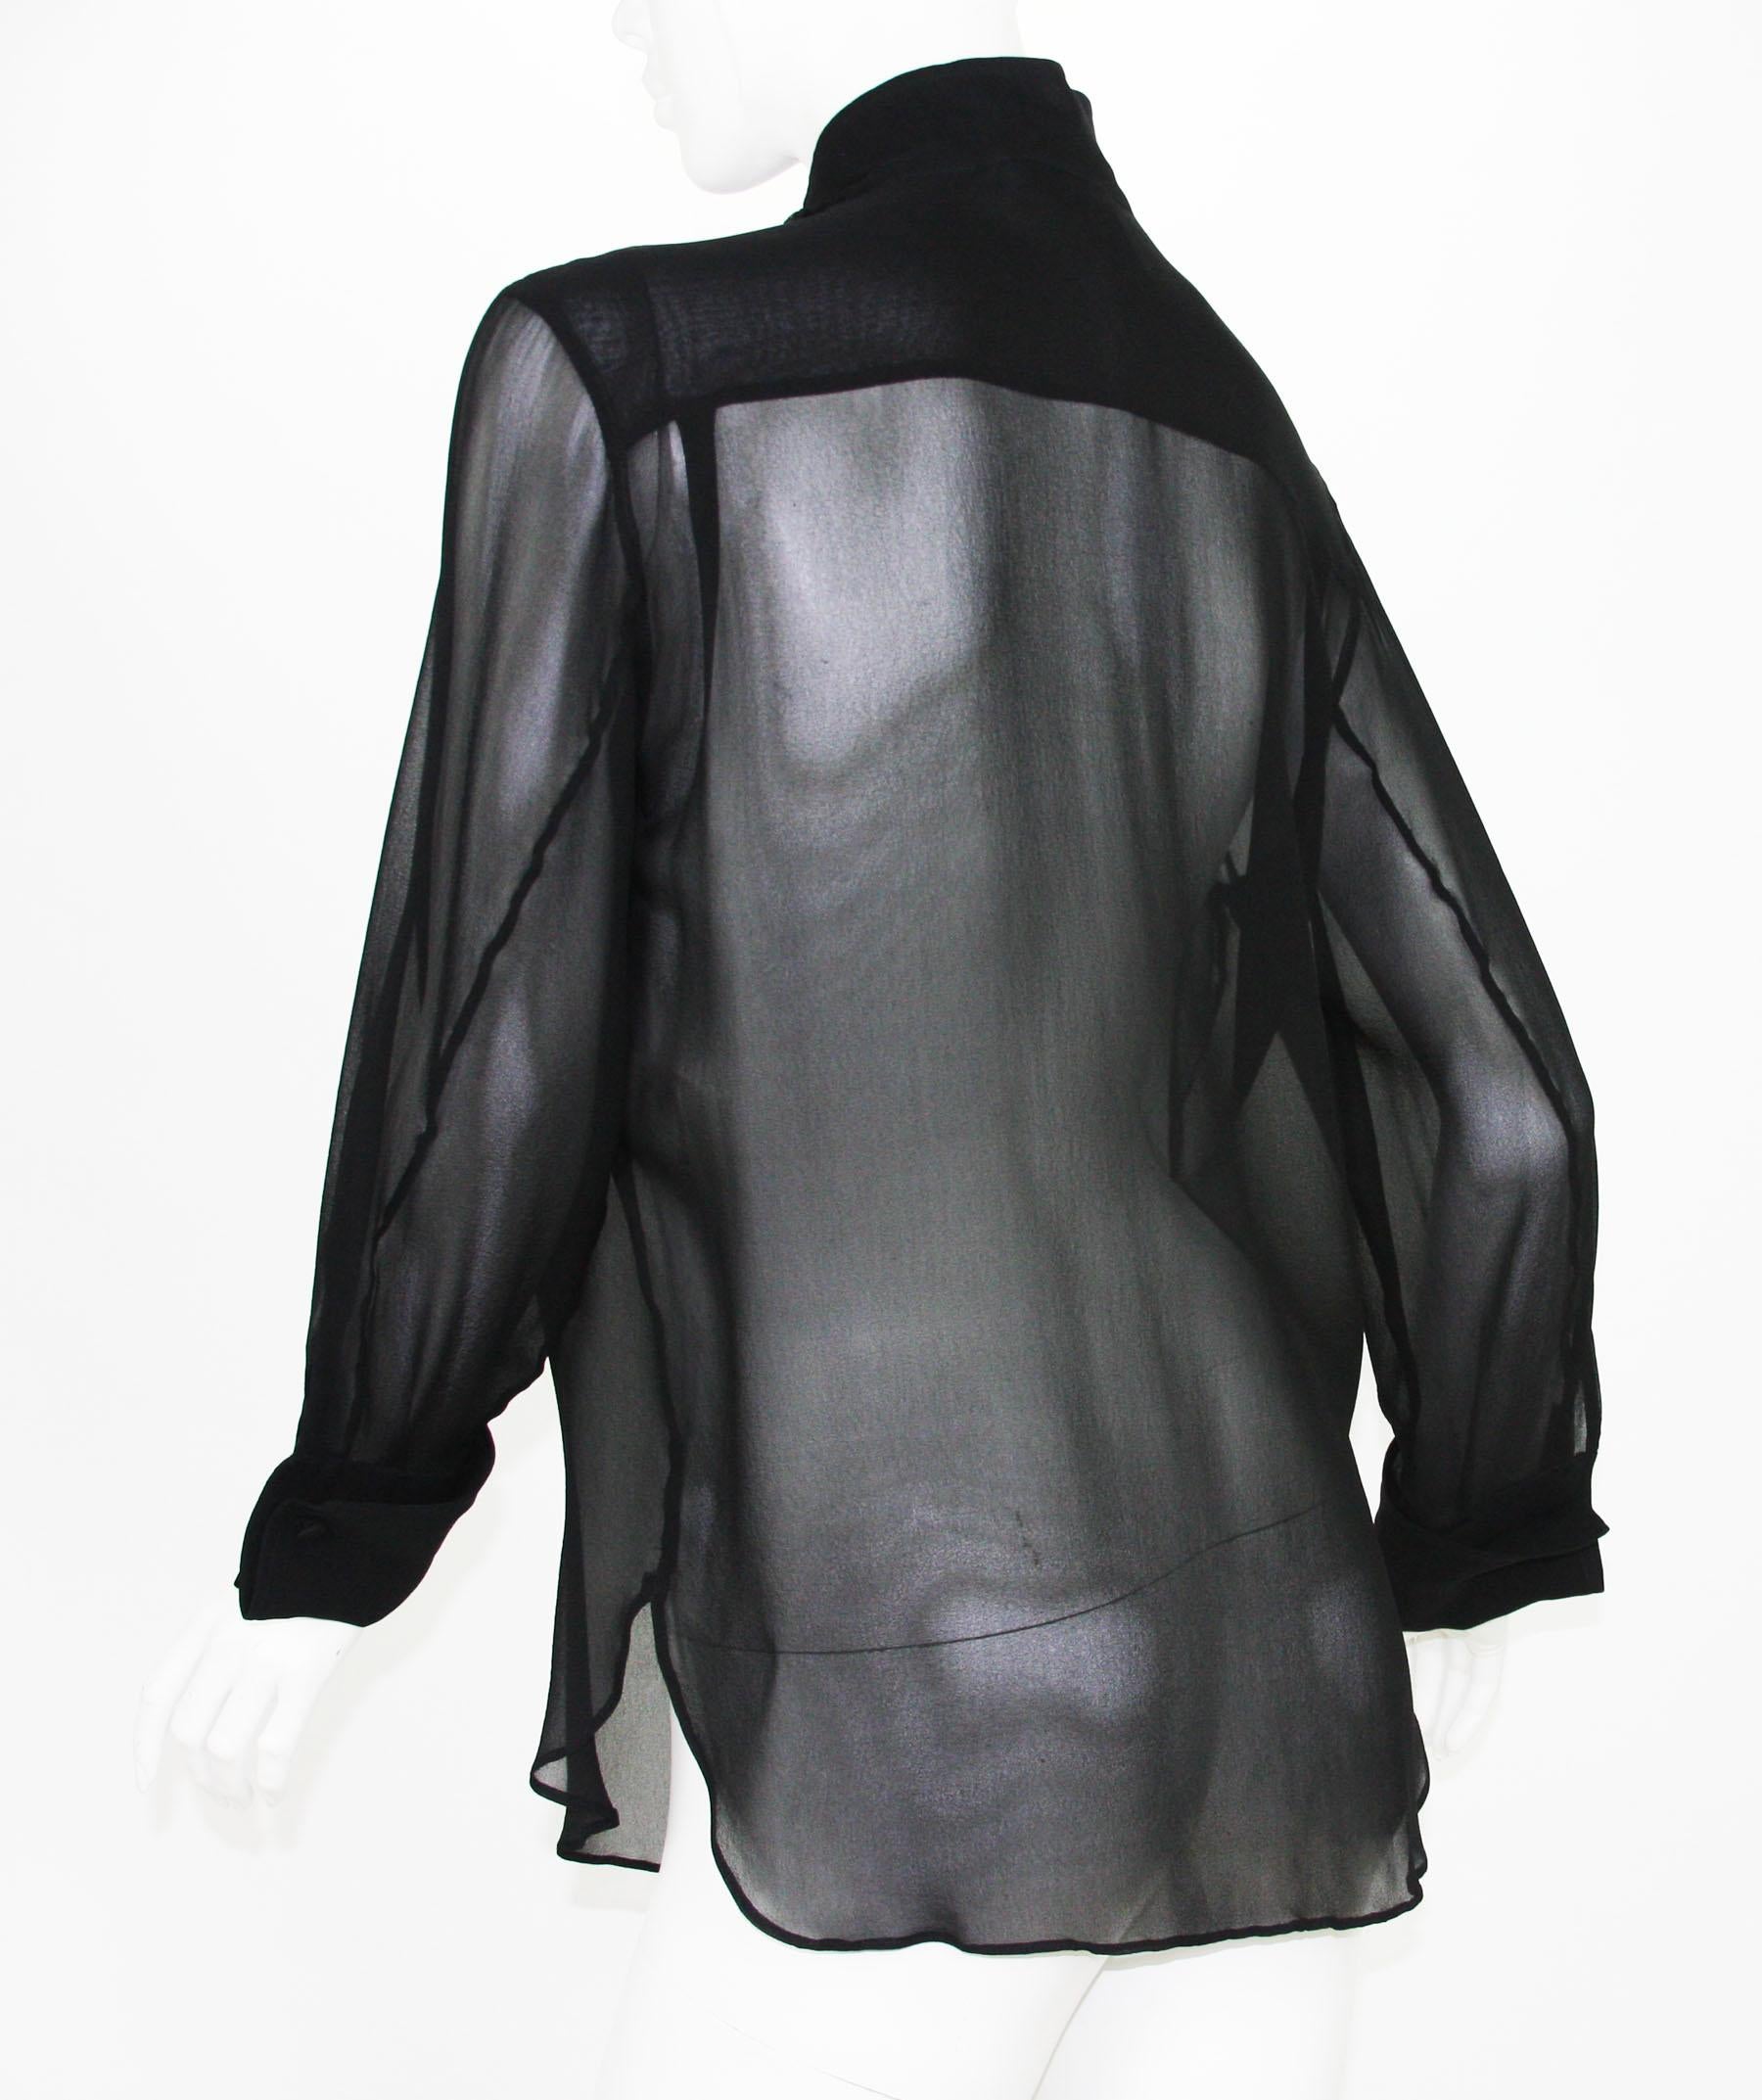 Tom Ford for Yves Saint Laurent 2001-2003 Collection Silk Top Velvet Skirt Suit  For Sale 1